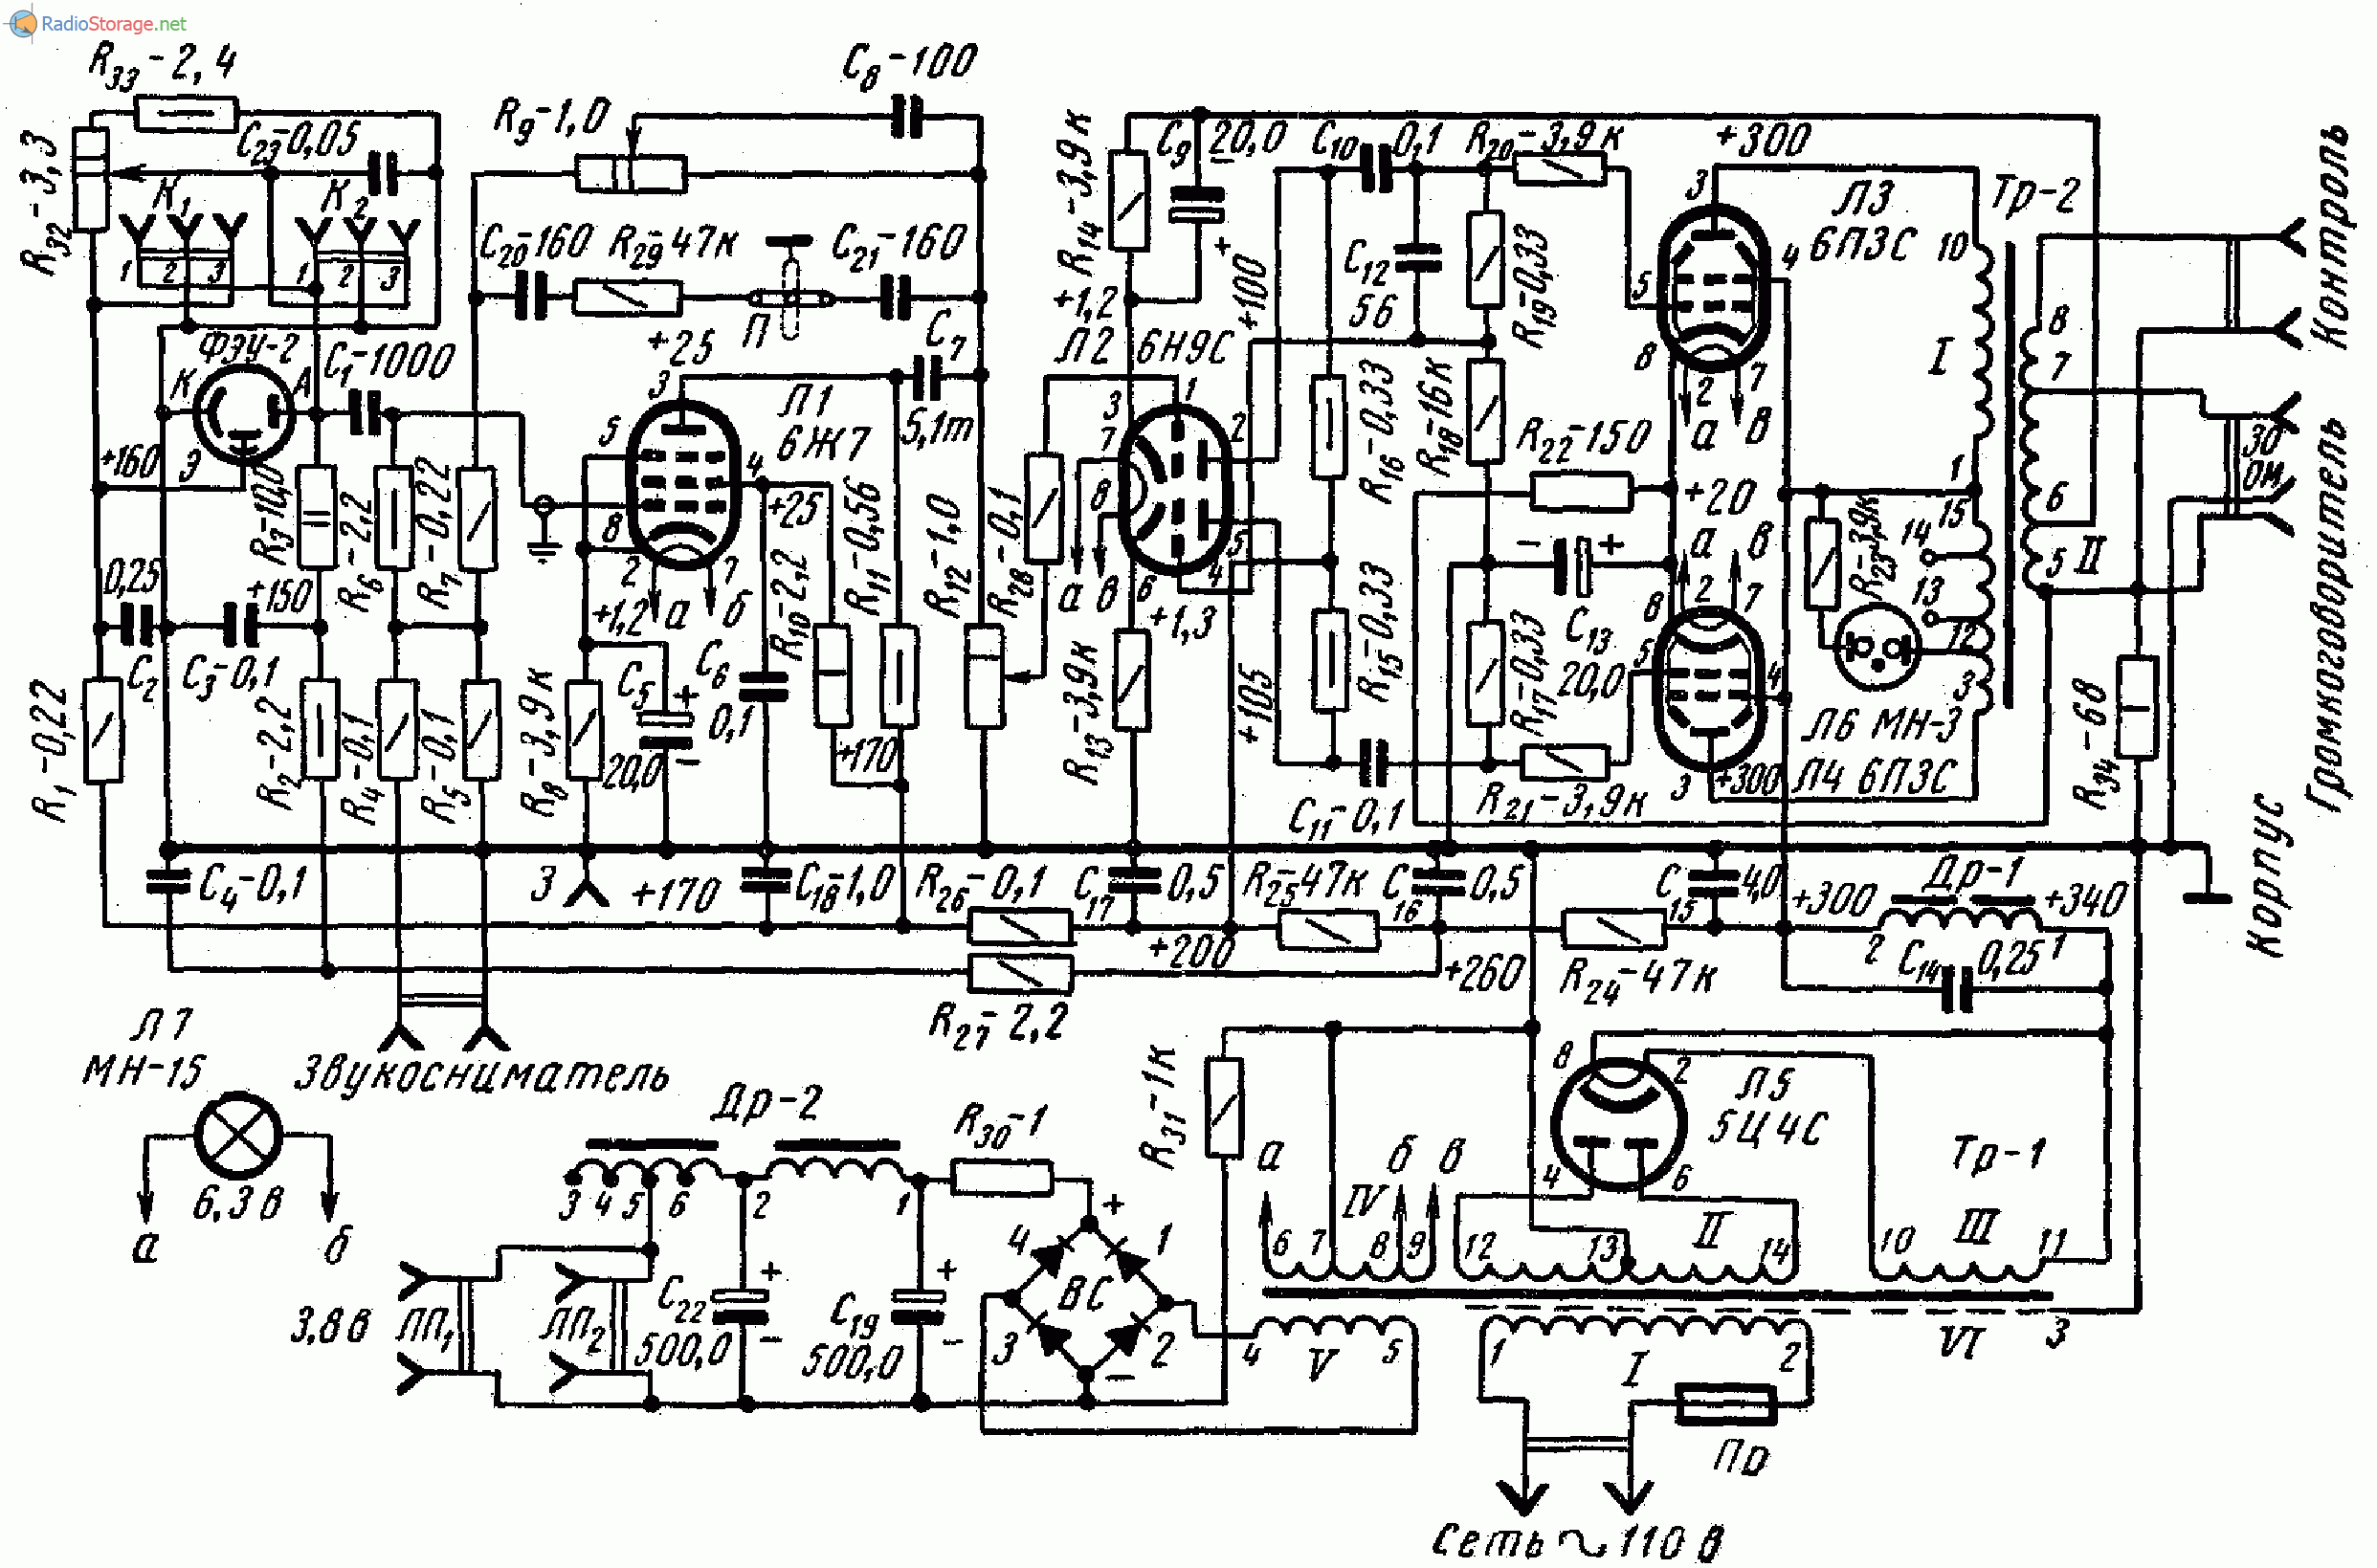 Ламповый усилитель 90У-2 (КУУП-56), схема